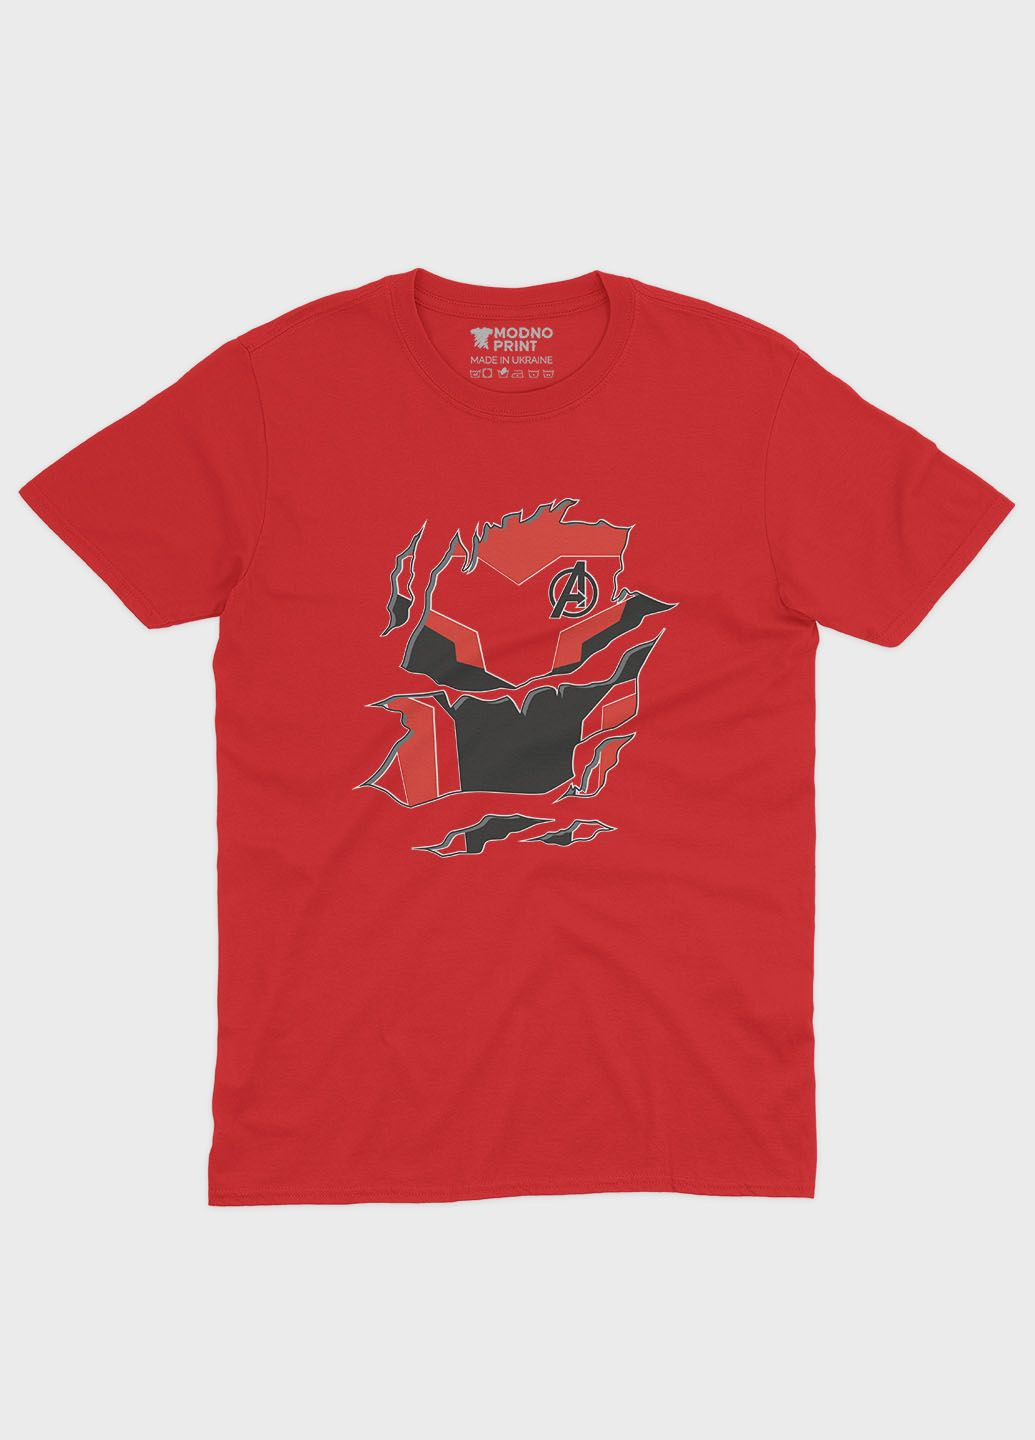 Червона демісезонна футболка для хлопчика з принтом супергероя - залізна людина (ts001-1-sre-006-016-006-b) Modno